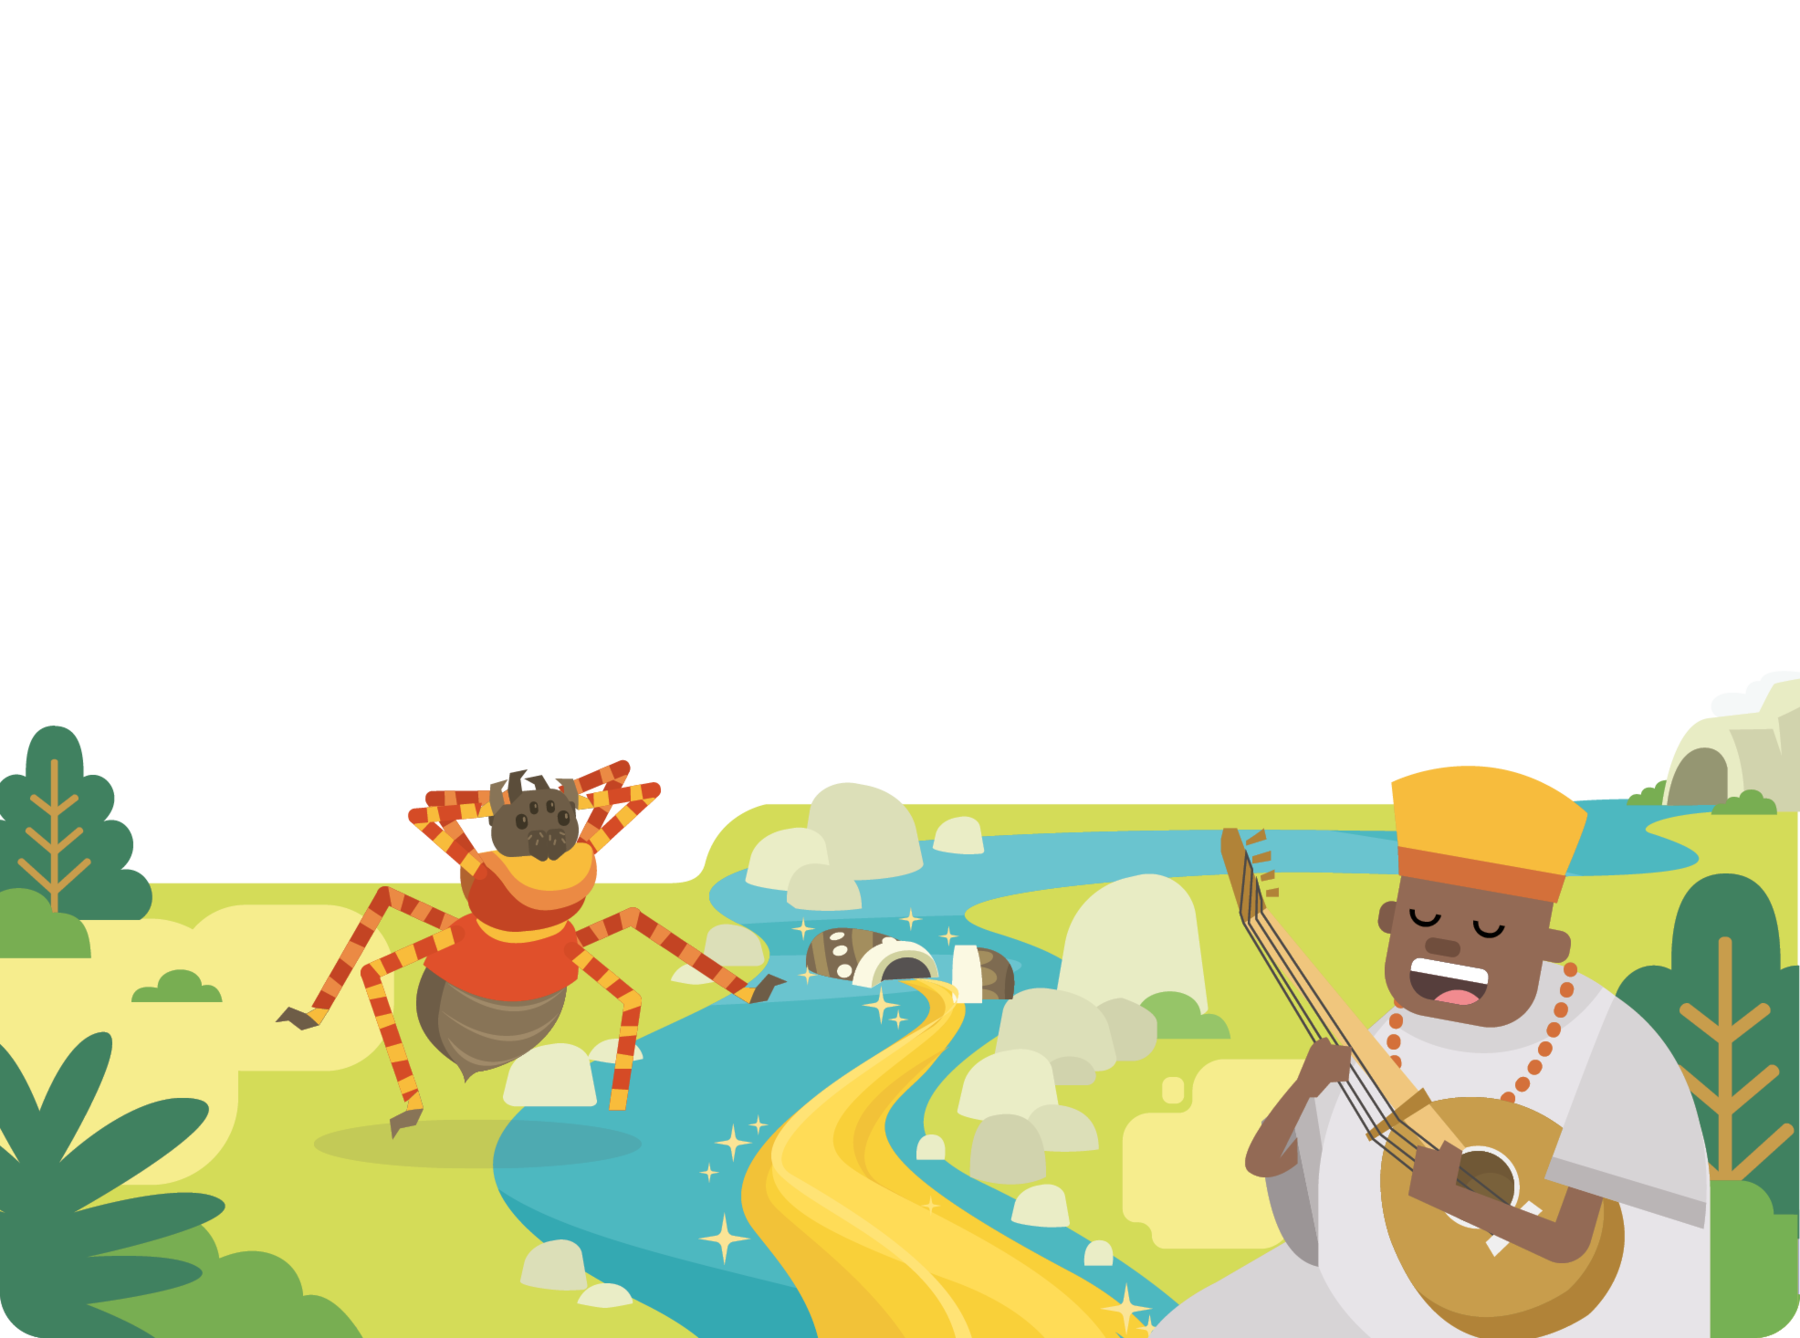 Ilustração. Um homem na margem de um rio, tocando violão. Ele usa túnica, colar e chapéu. No rio há um recipiente vazando conteúdo dourado. Na outra margem do rio há uma grande aranha. Ao redor há árvores.